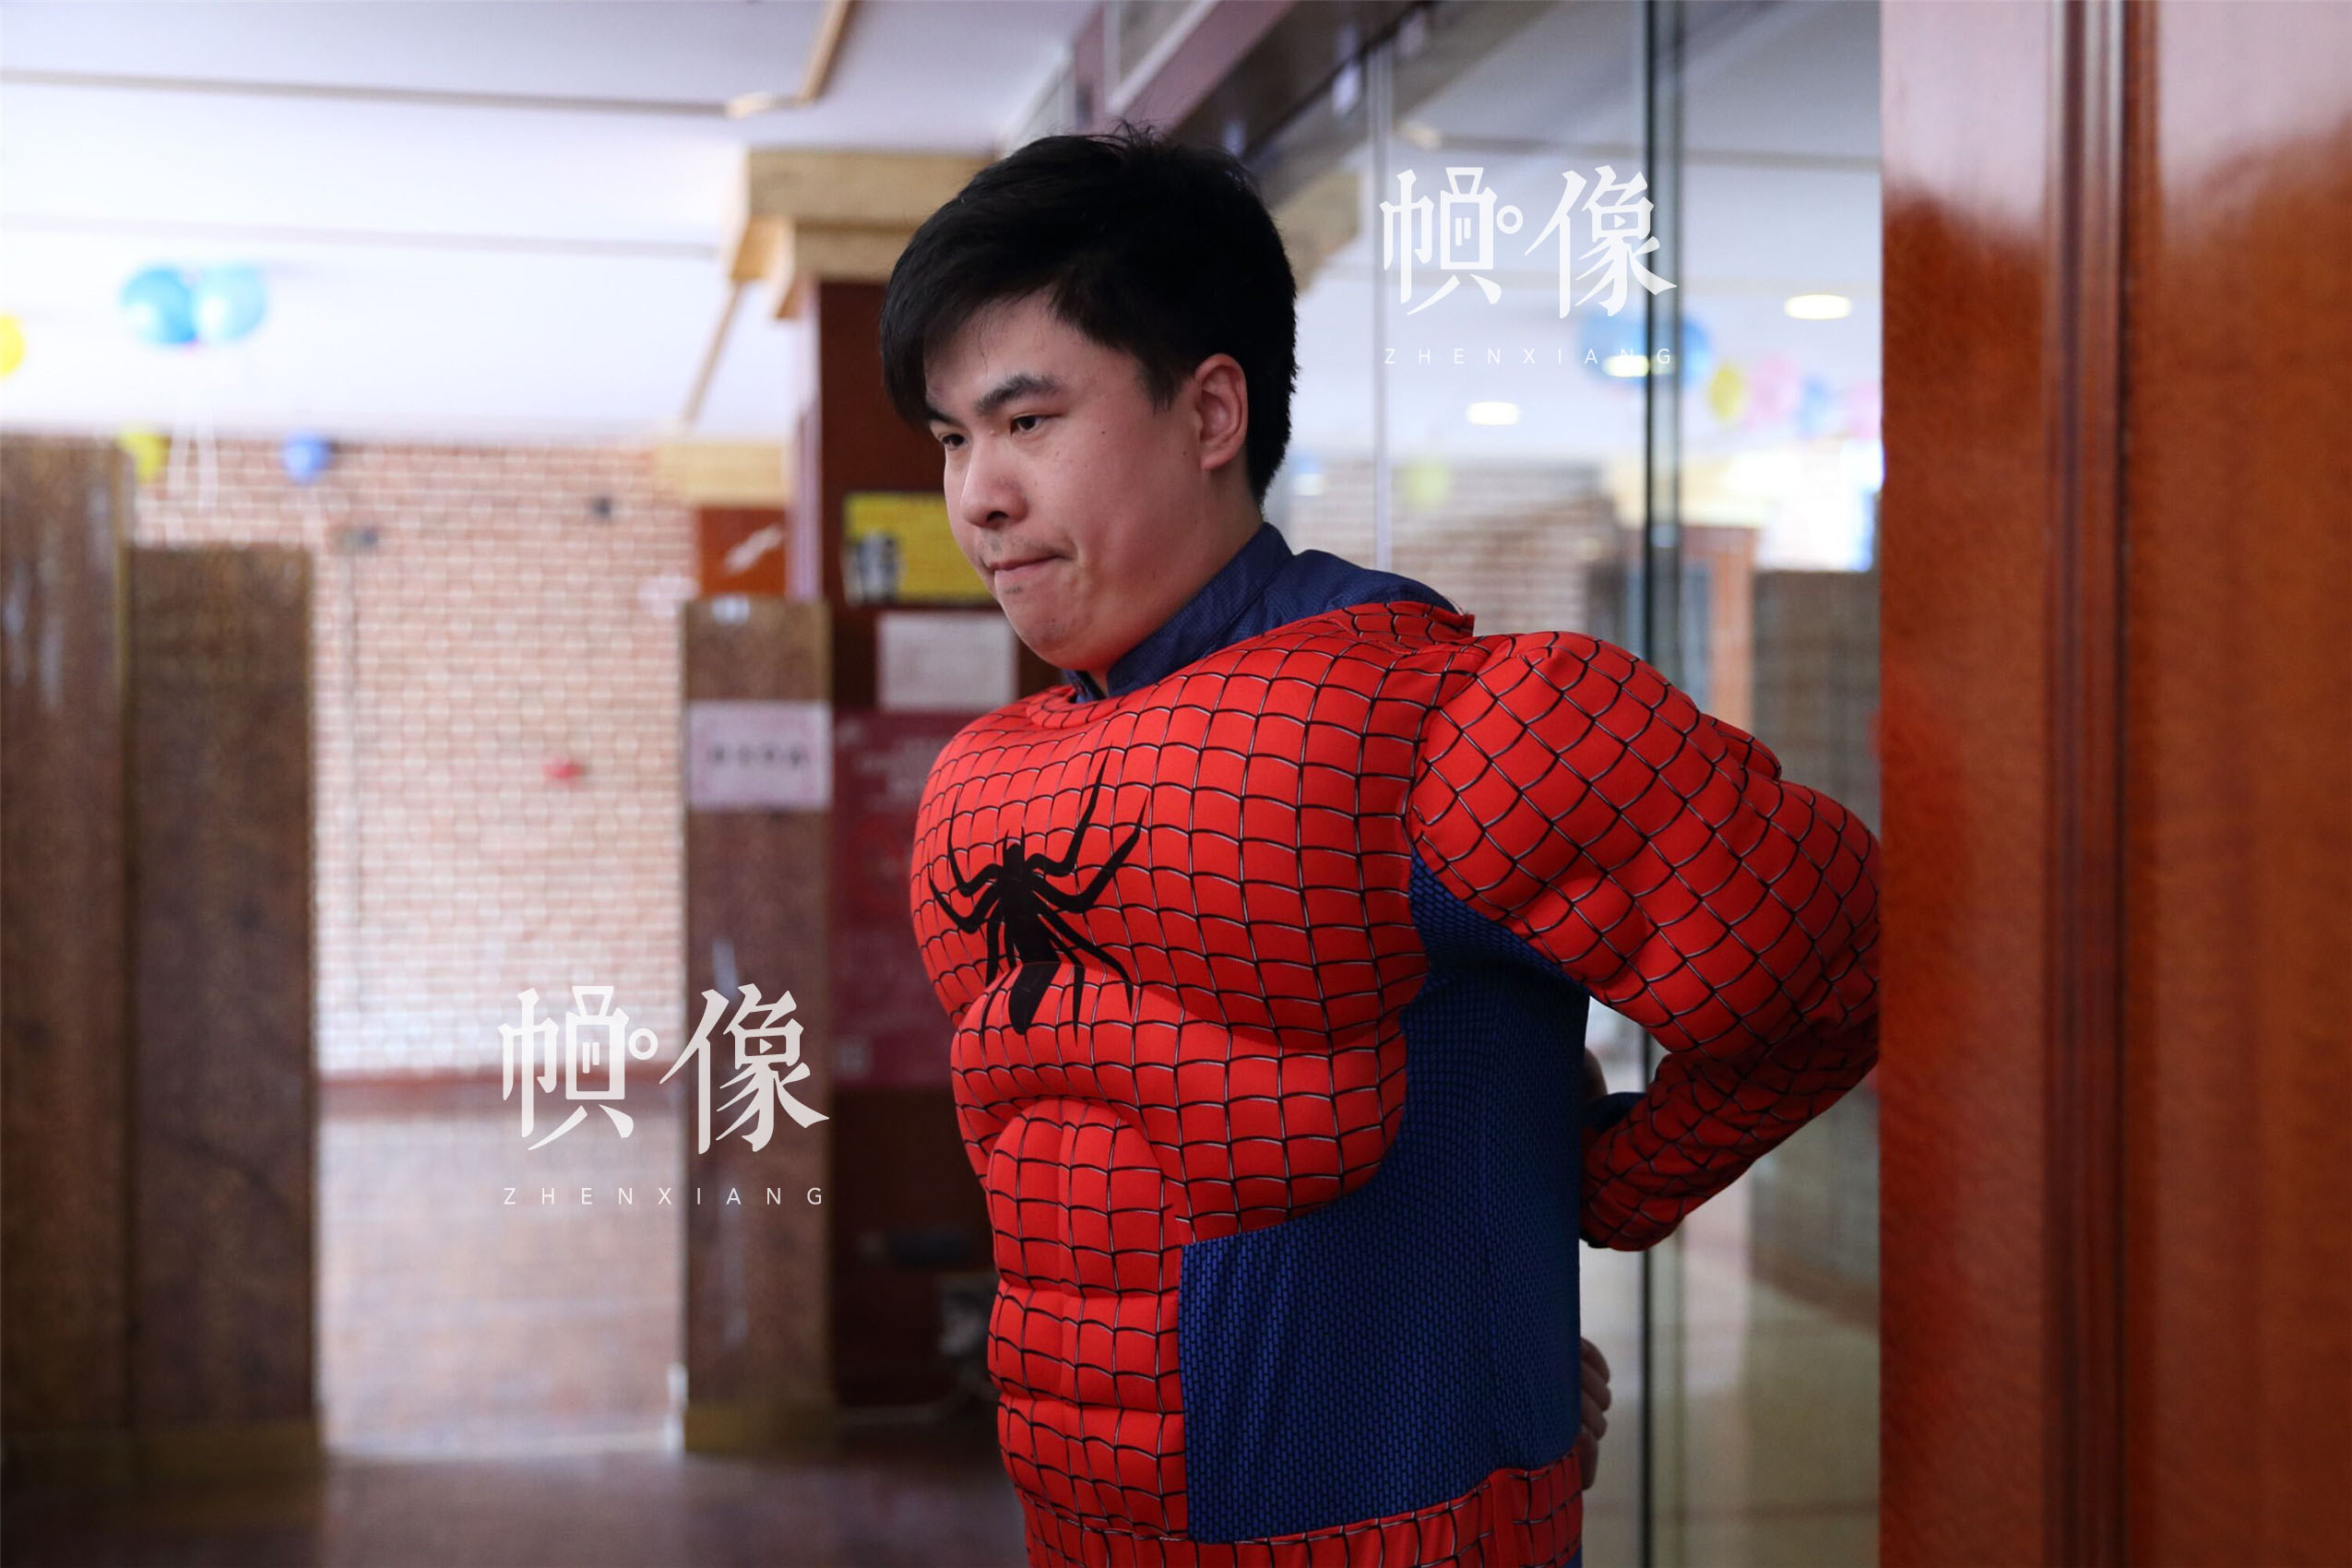 2017年5月26日，北京首都儿科研究所，男护士季长绪扮演“蜘蛛侠”。季长绪是首儿所医院手术室的第一批男护士之一，已成为手术室的技术骨干。当天，医院为白血病患儿举办了“你是我的英雄”儿童节公益活动。中国网记者 陈维松 摄